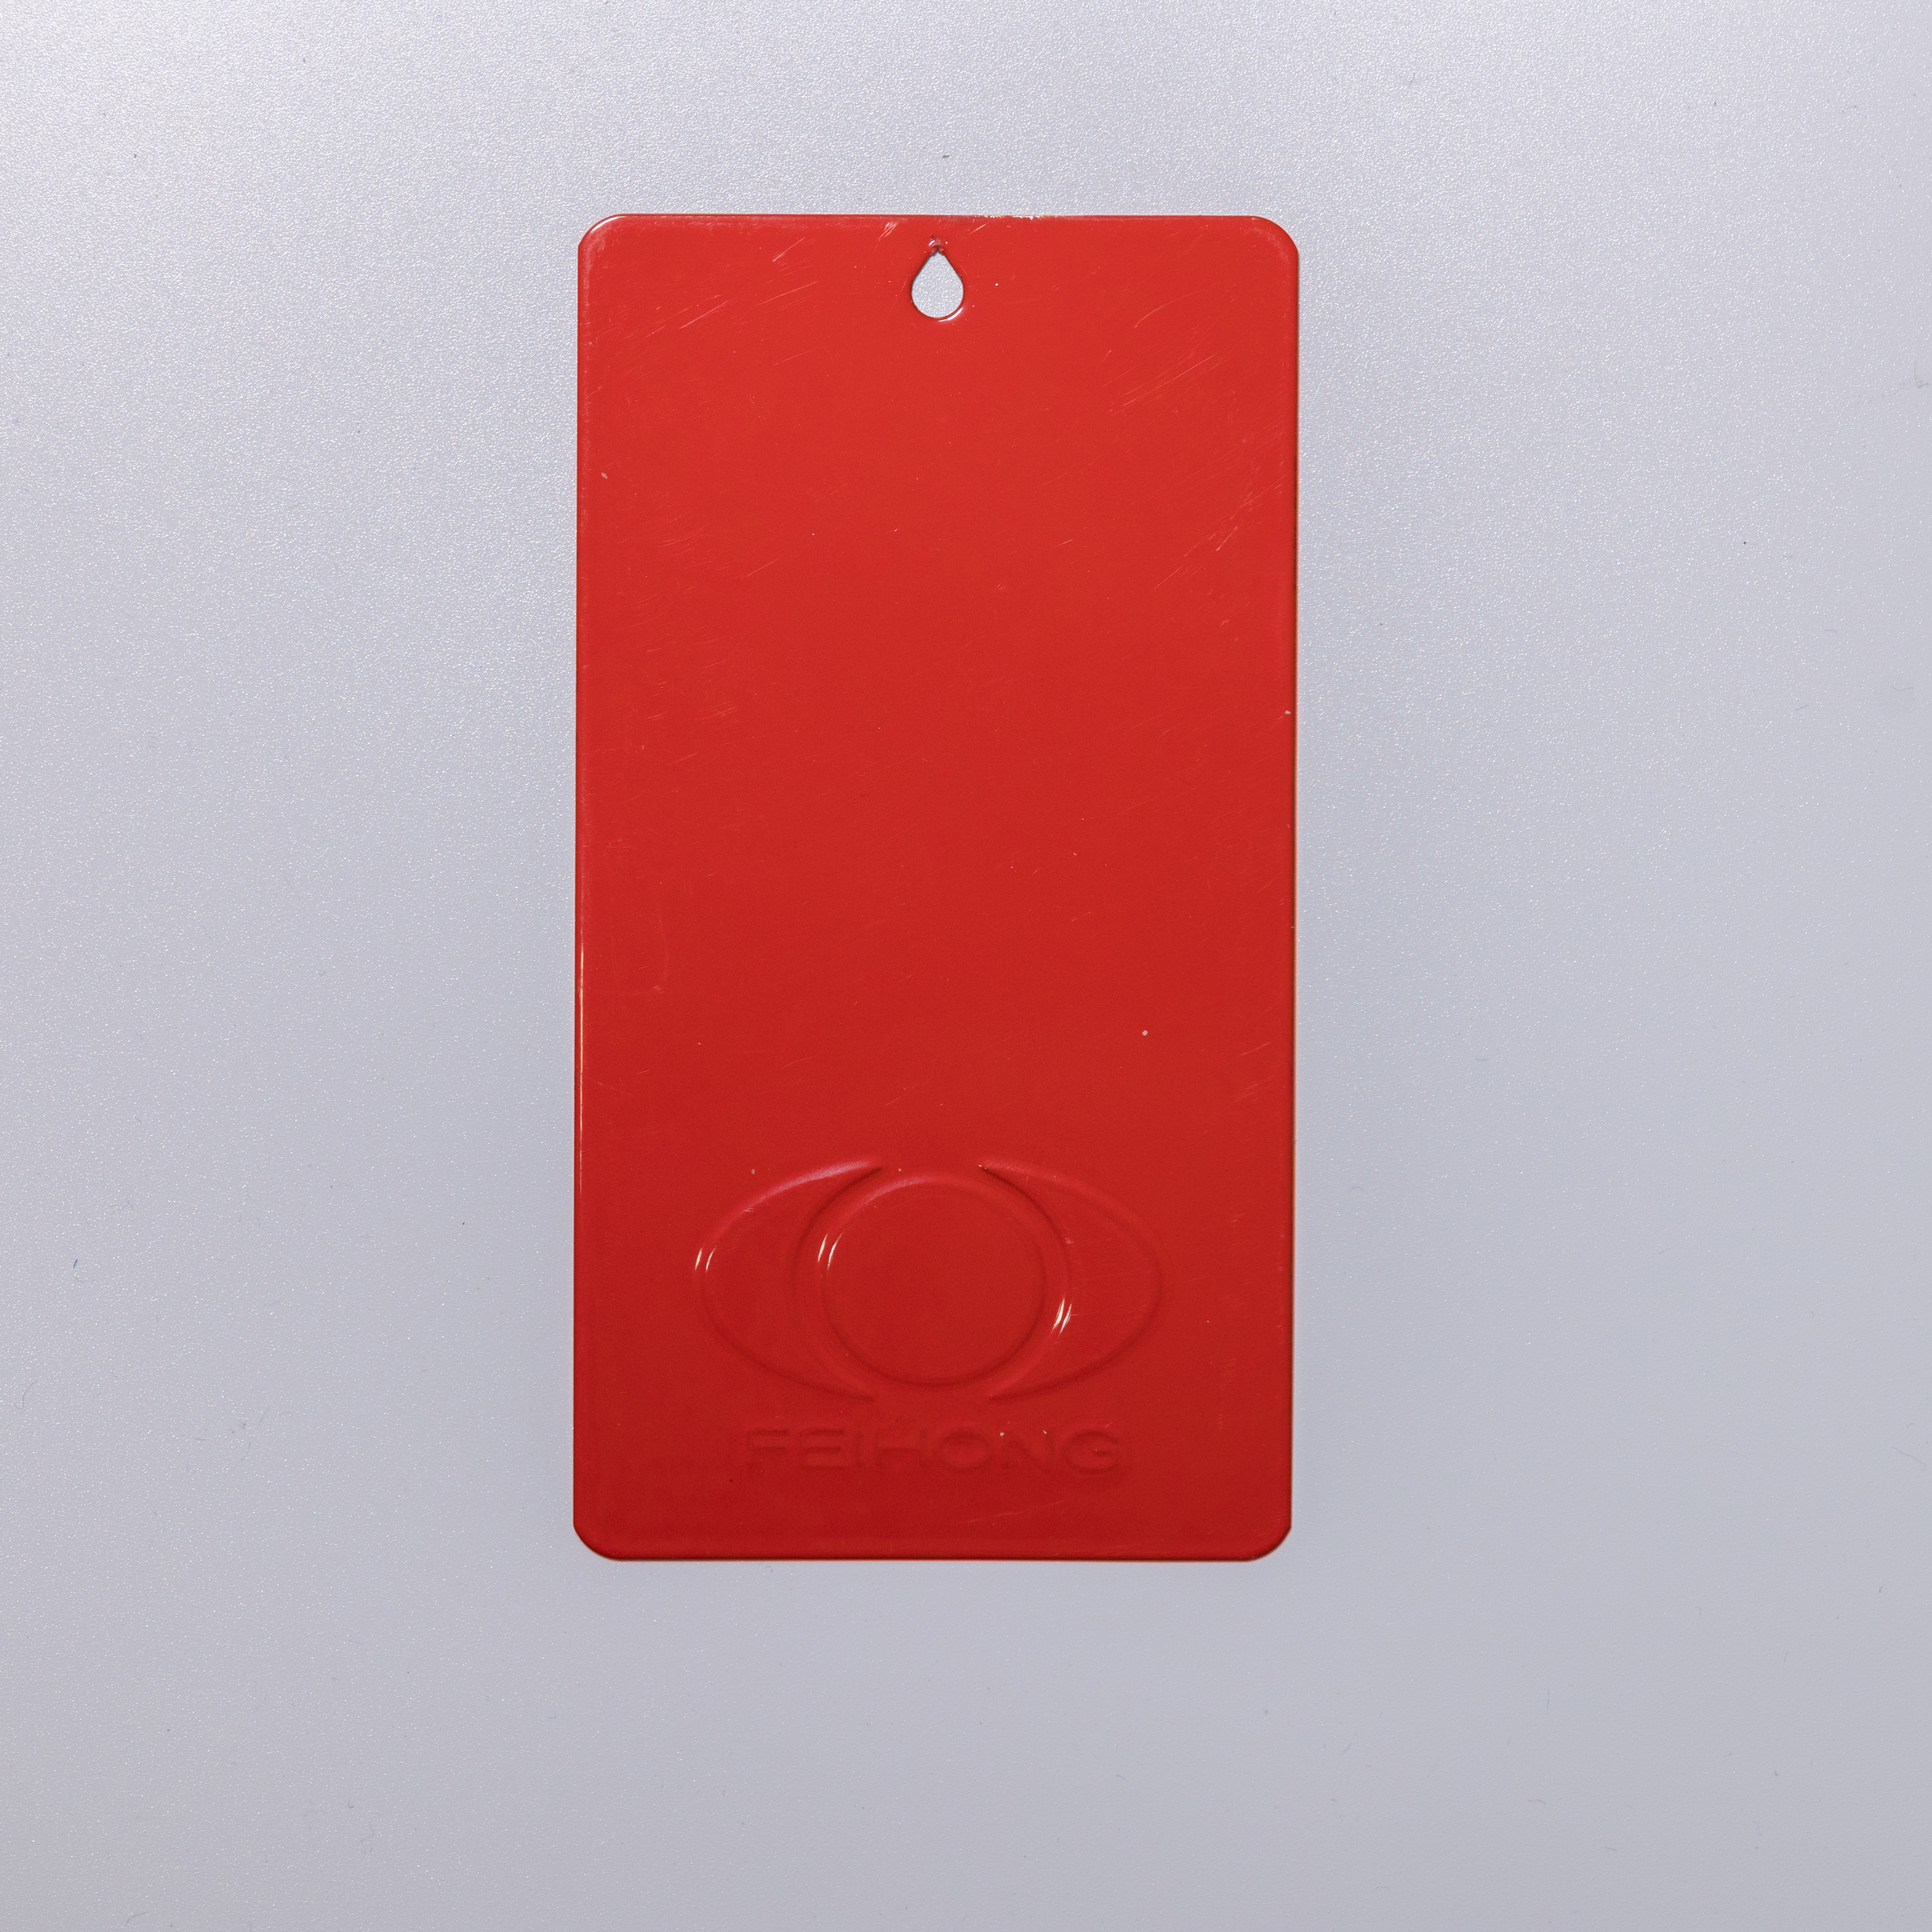 Revêtement en poudre de polyester de couleur rouge Ral3020/3000, lisse et brillant pour extincteur